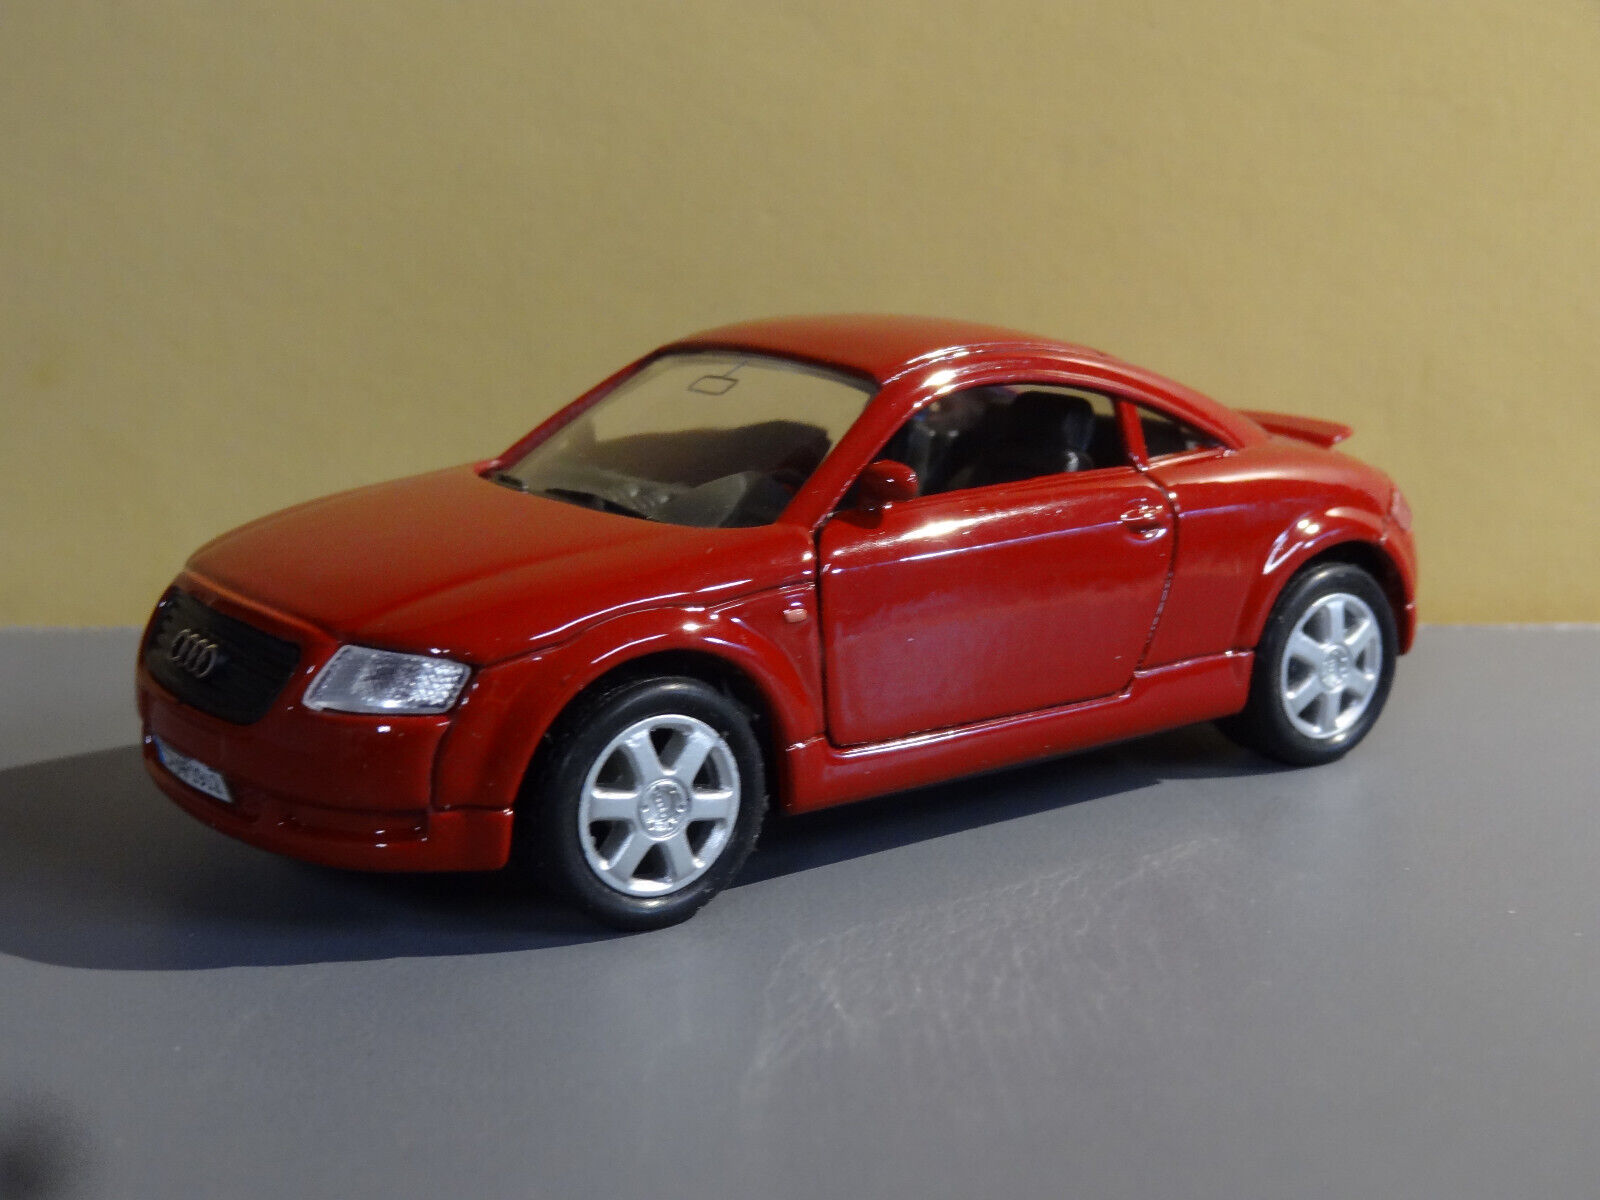 1ST GEN 1998-2006 RED AUDI TT SPORTS CAR 1/43 SCALE DIECAST DIORAMA MODEL